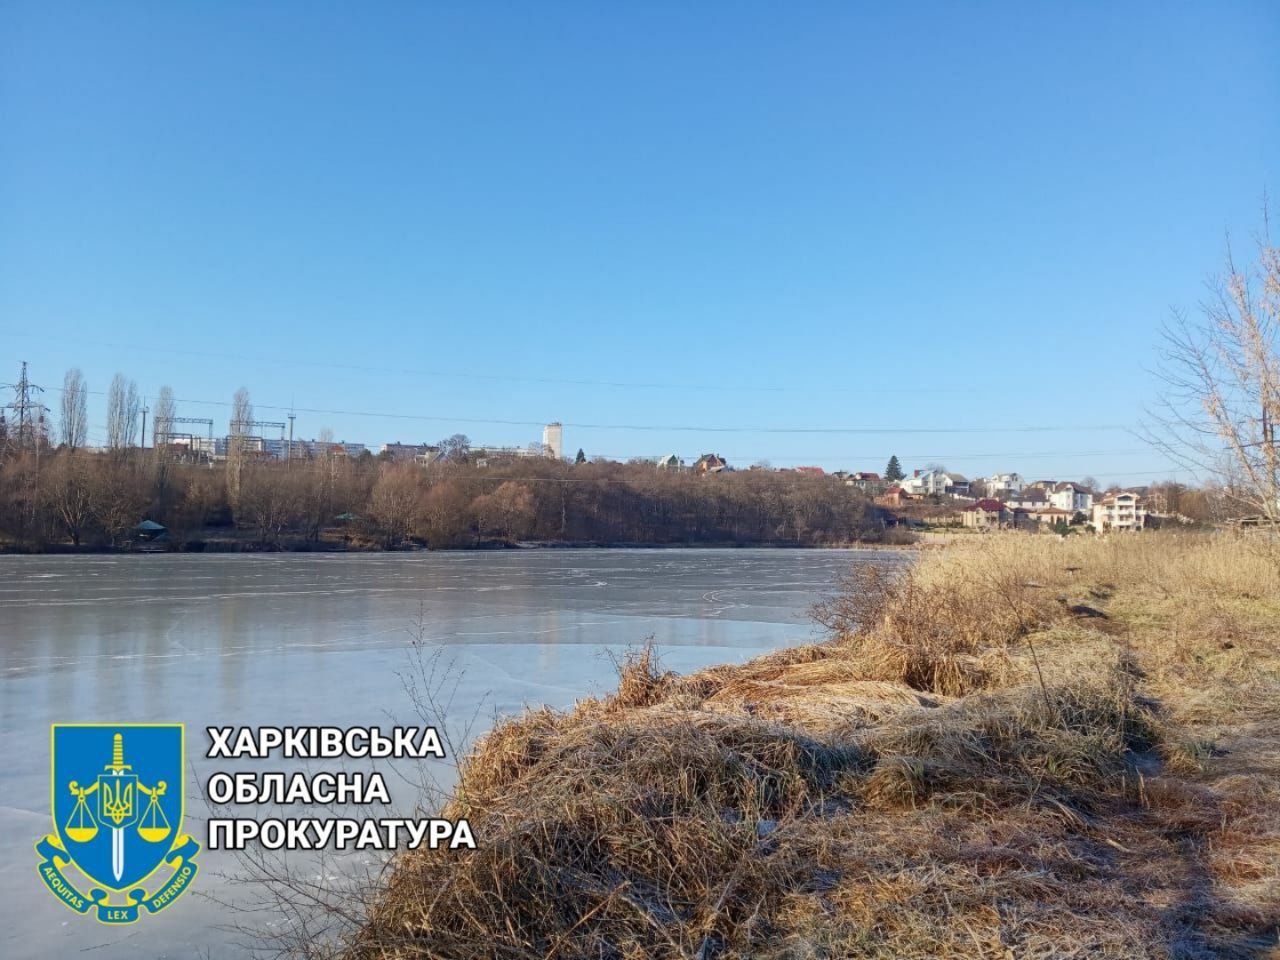 Прокуратура повернула державі земельну ділянку з озером на Харківщині вартістю майже 205 млн грн